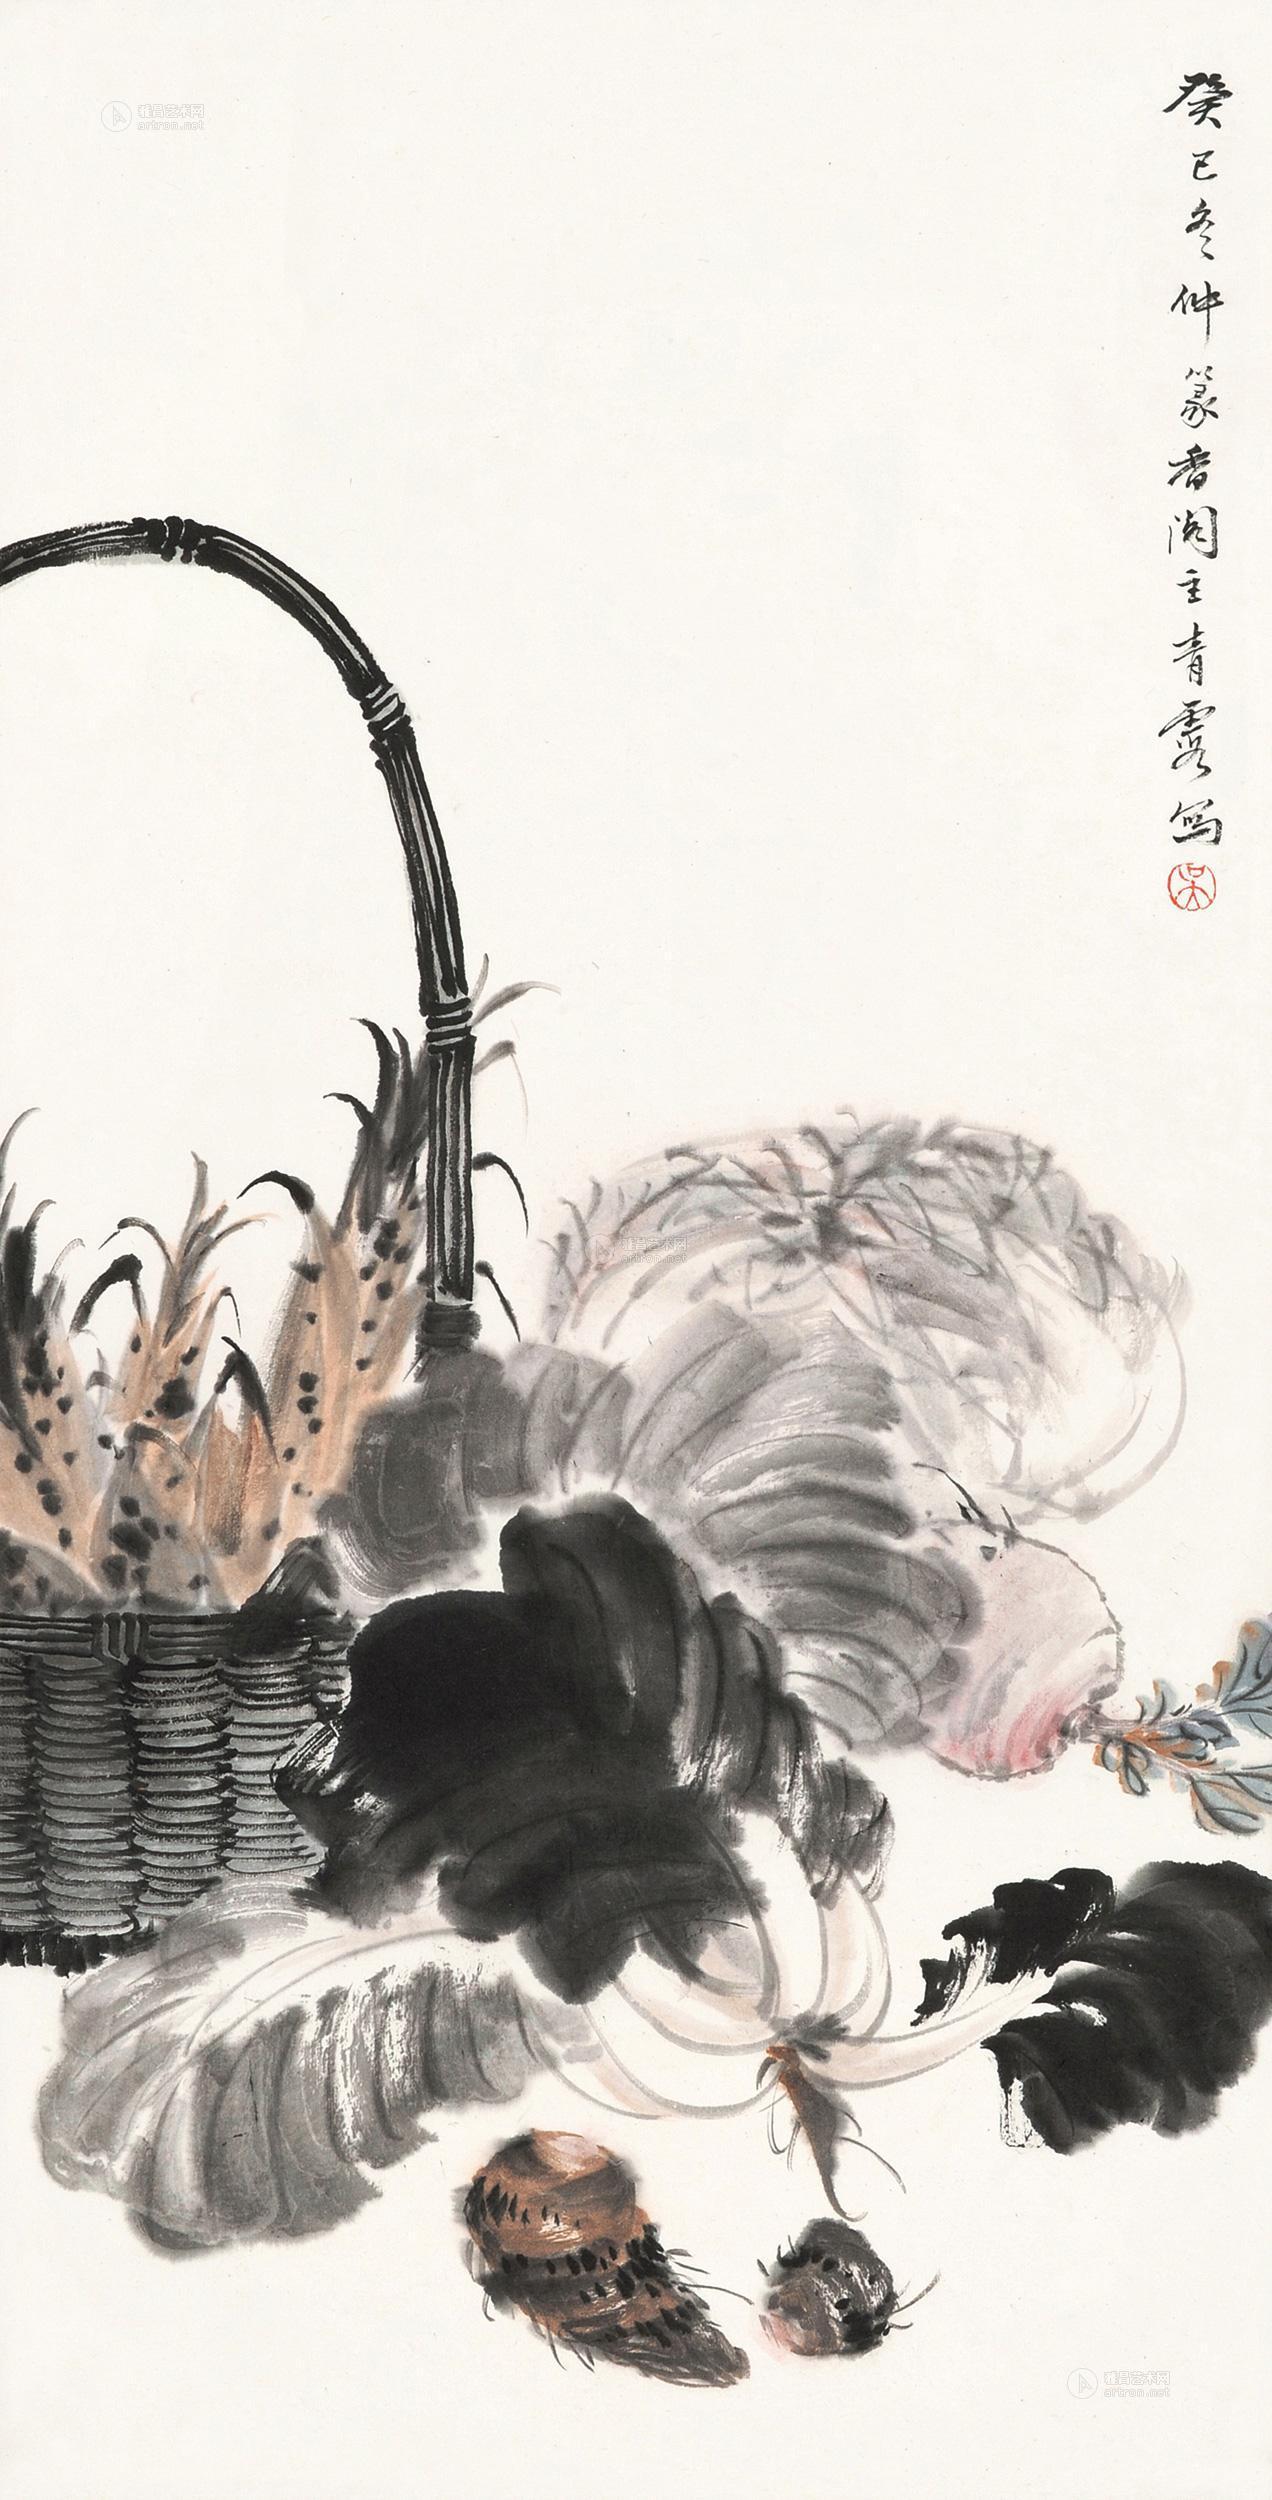 上海嘉泰拍卖有限公司 2013春季艺术品拍卖会 中国近现代书画专场